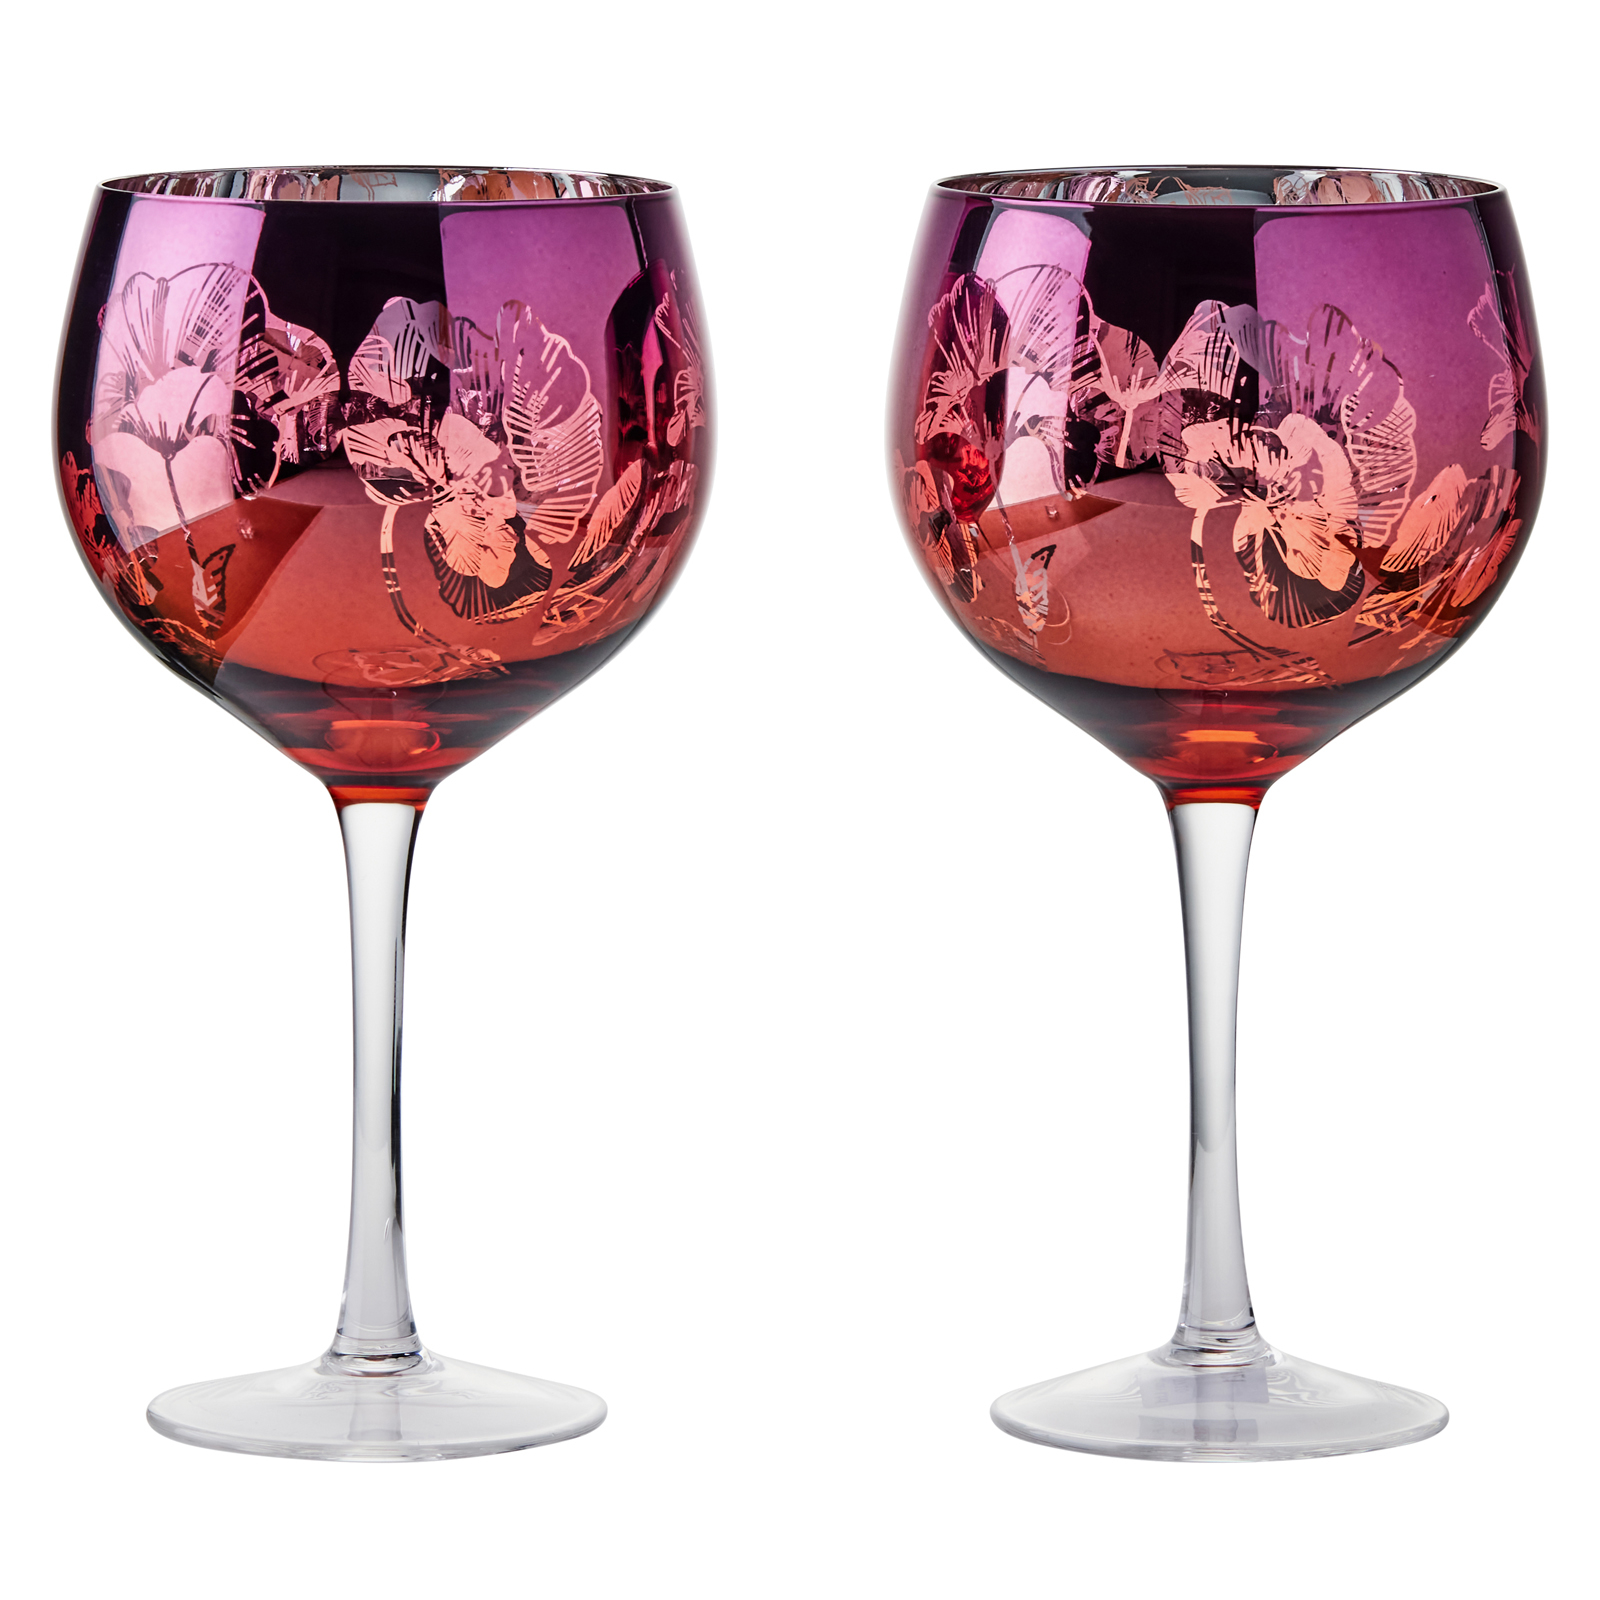 Visuel de Lot de 2 verres à gin by Artland - Bloom Un décor magnifique avec un design détaillé rose, orange et argent, ces verres à gin exclusif comportent un bouquet de fleurs miroir, le tout sur un grand bol incurvé, et une tige haute pour une élégance ultime